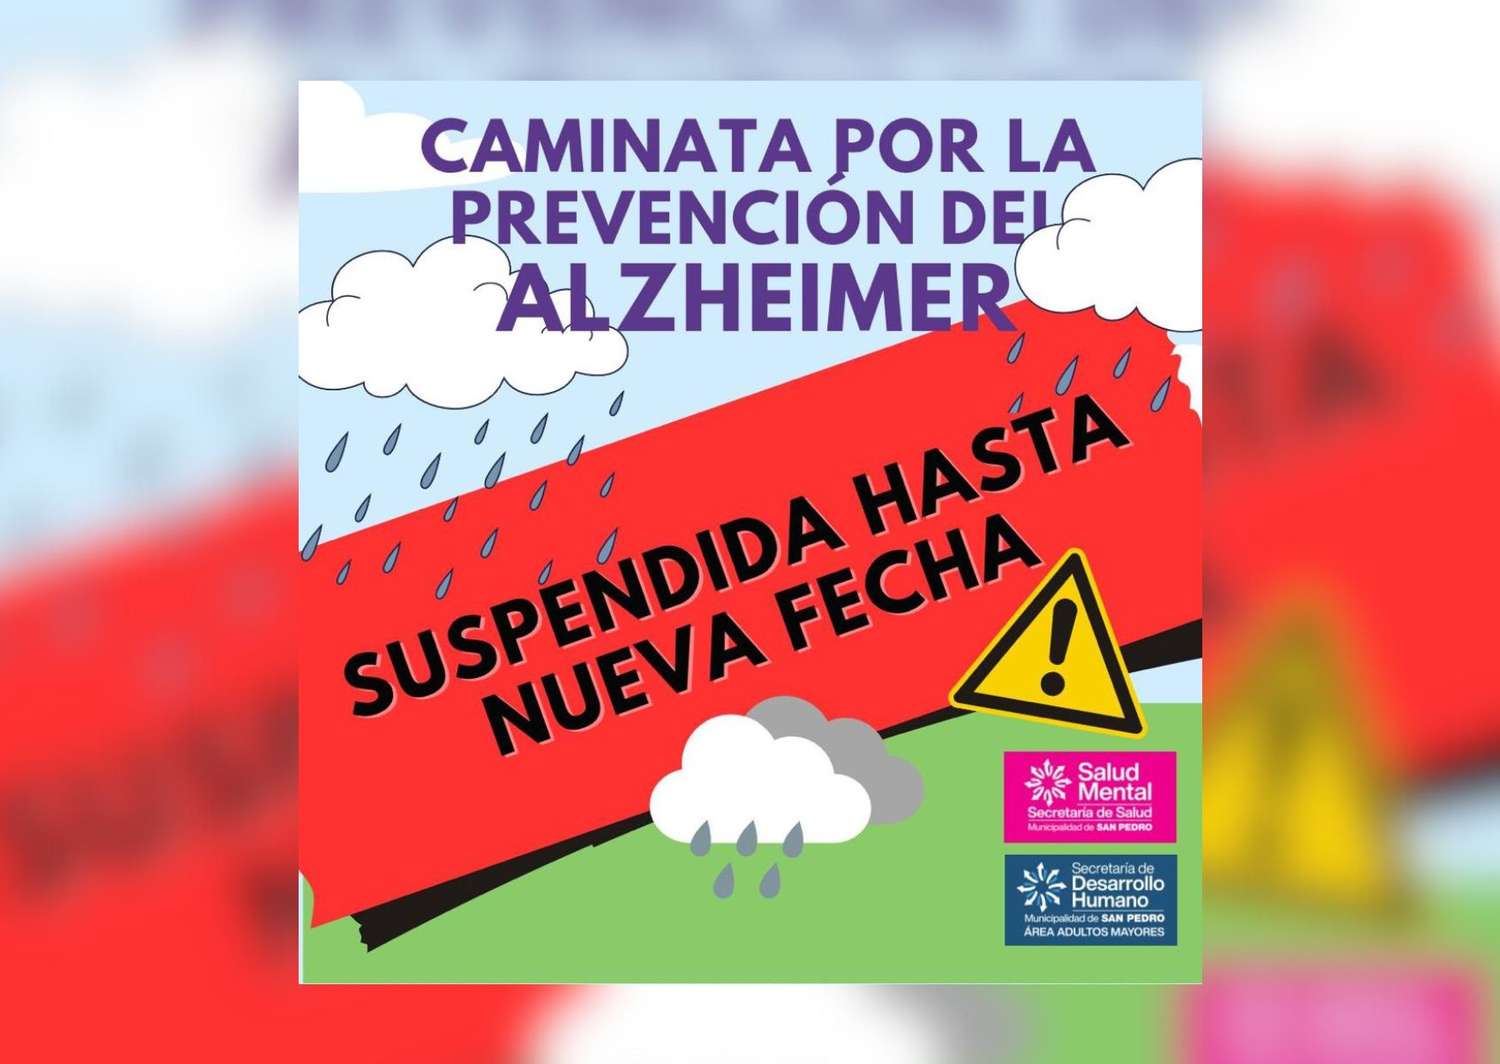 Suspendida la caminata por la prevención del alzheimer